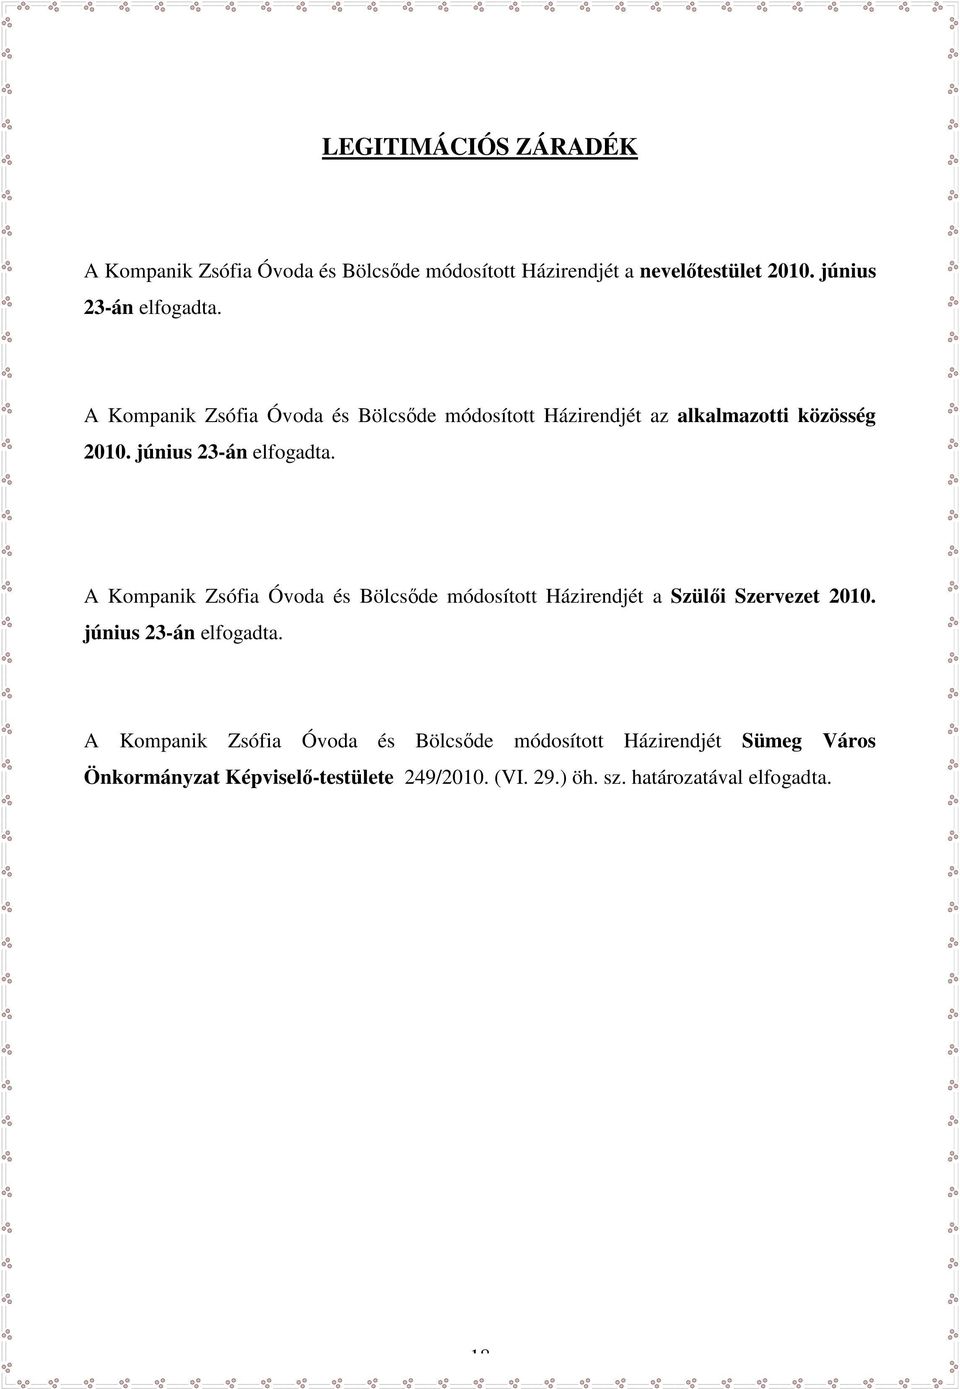 A Kompanik Zsófia Óvoda és Bölcsőde módosított Házirendjét a Szülői Szervezet 2010. június 23-án elfogadta.